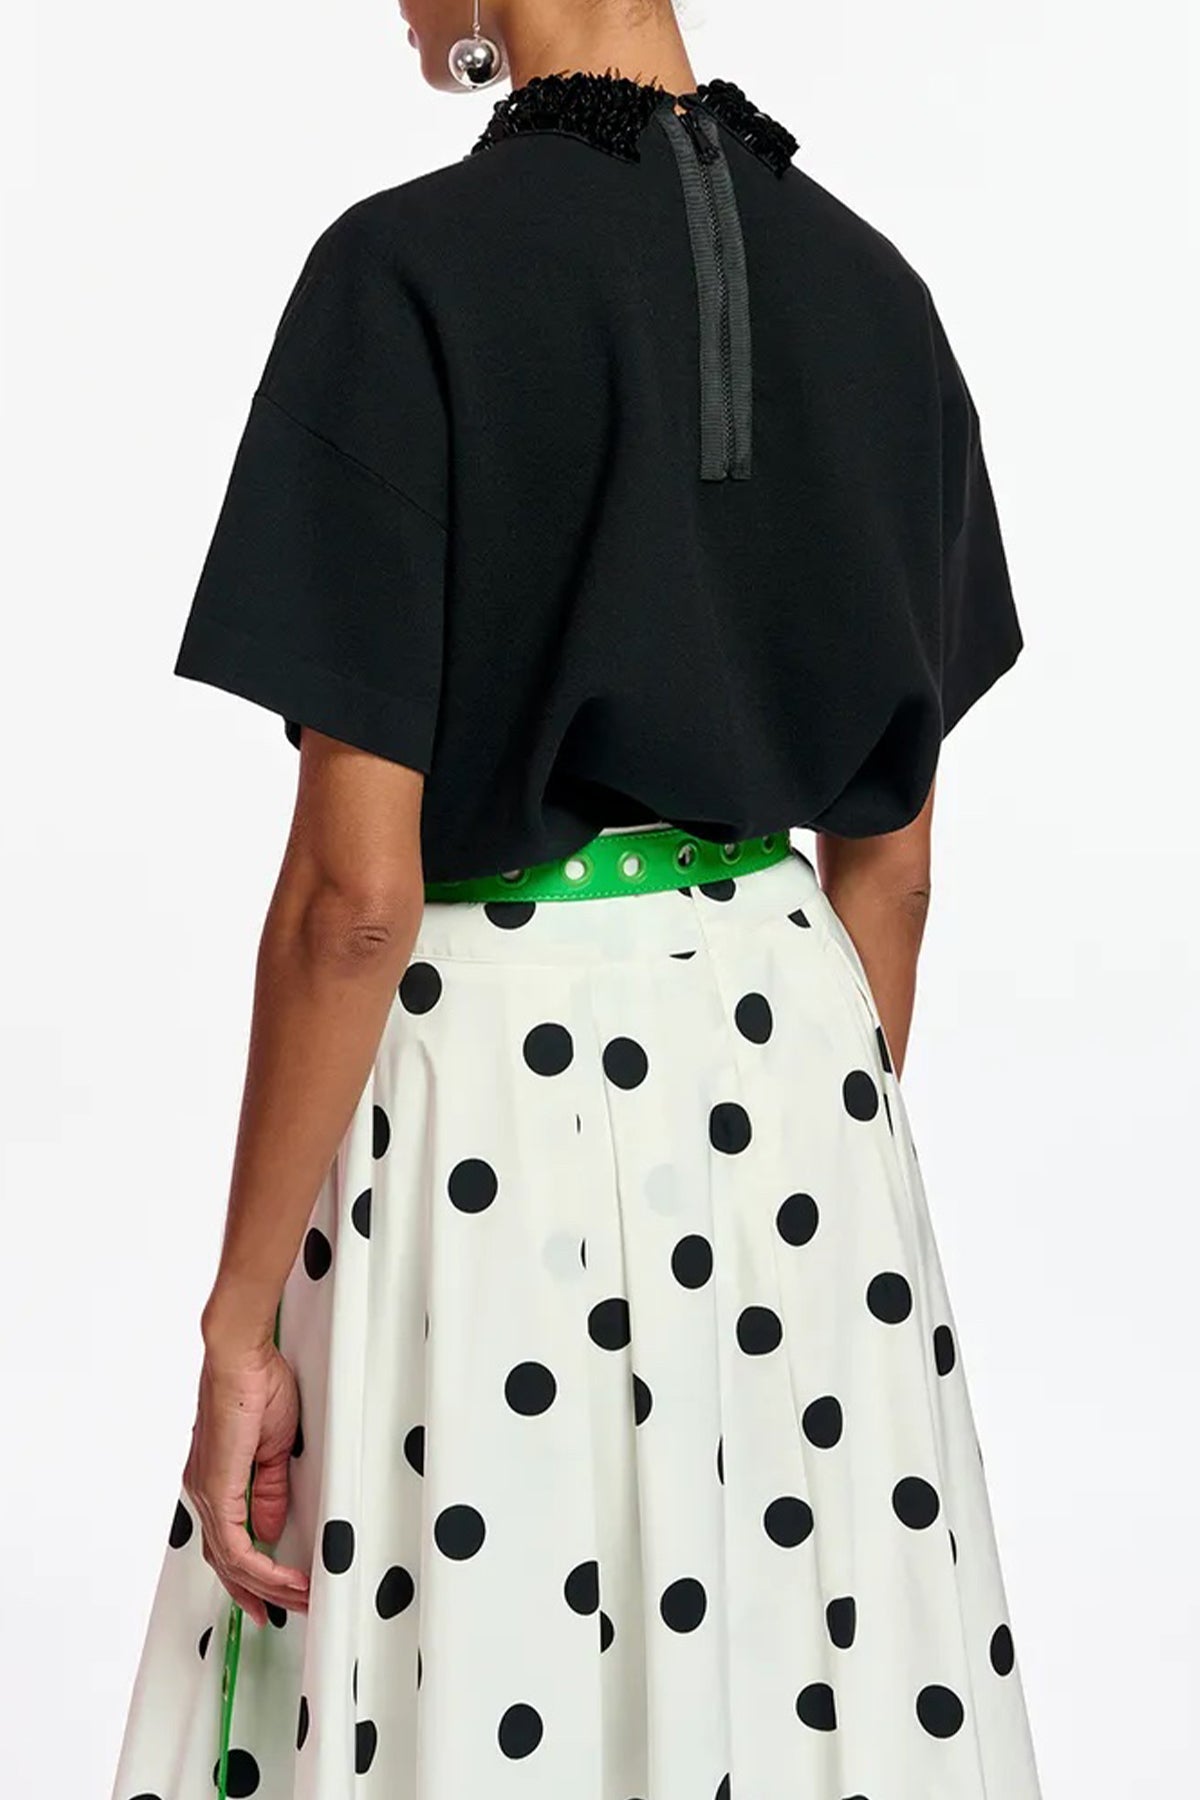 Filano Sequin - Embellished Collar in Black - shop - olivia.com